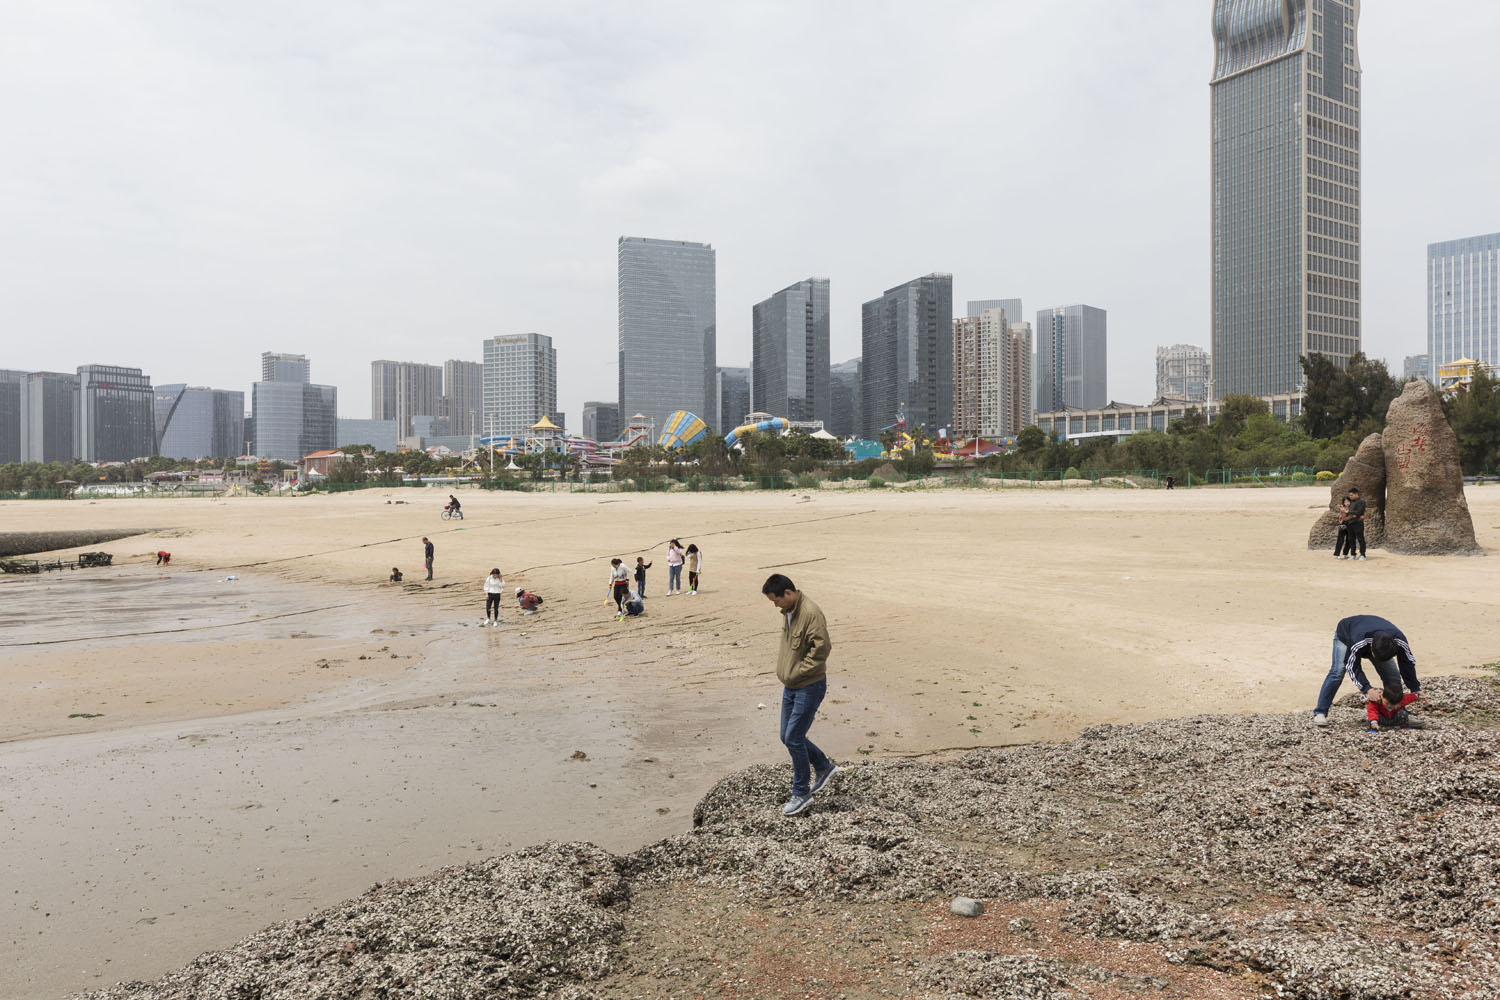 Beach goers at Guanyinshan Fantasy Beach. Xiamen, China. 2018.